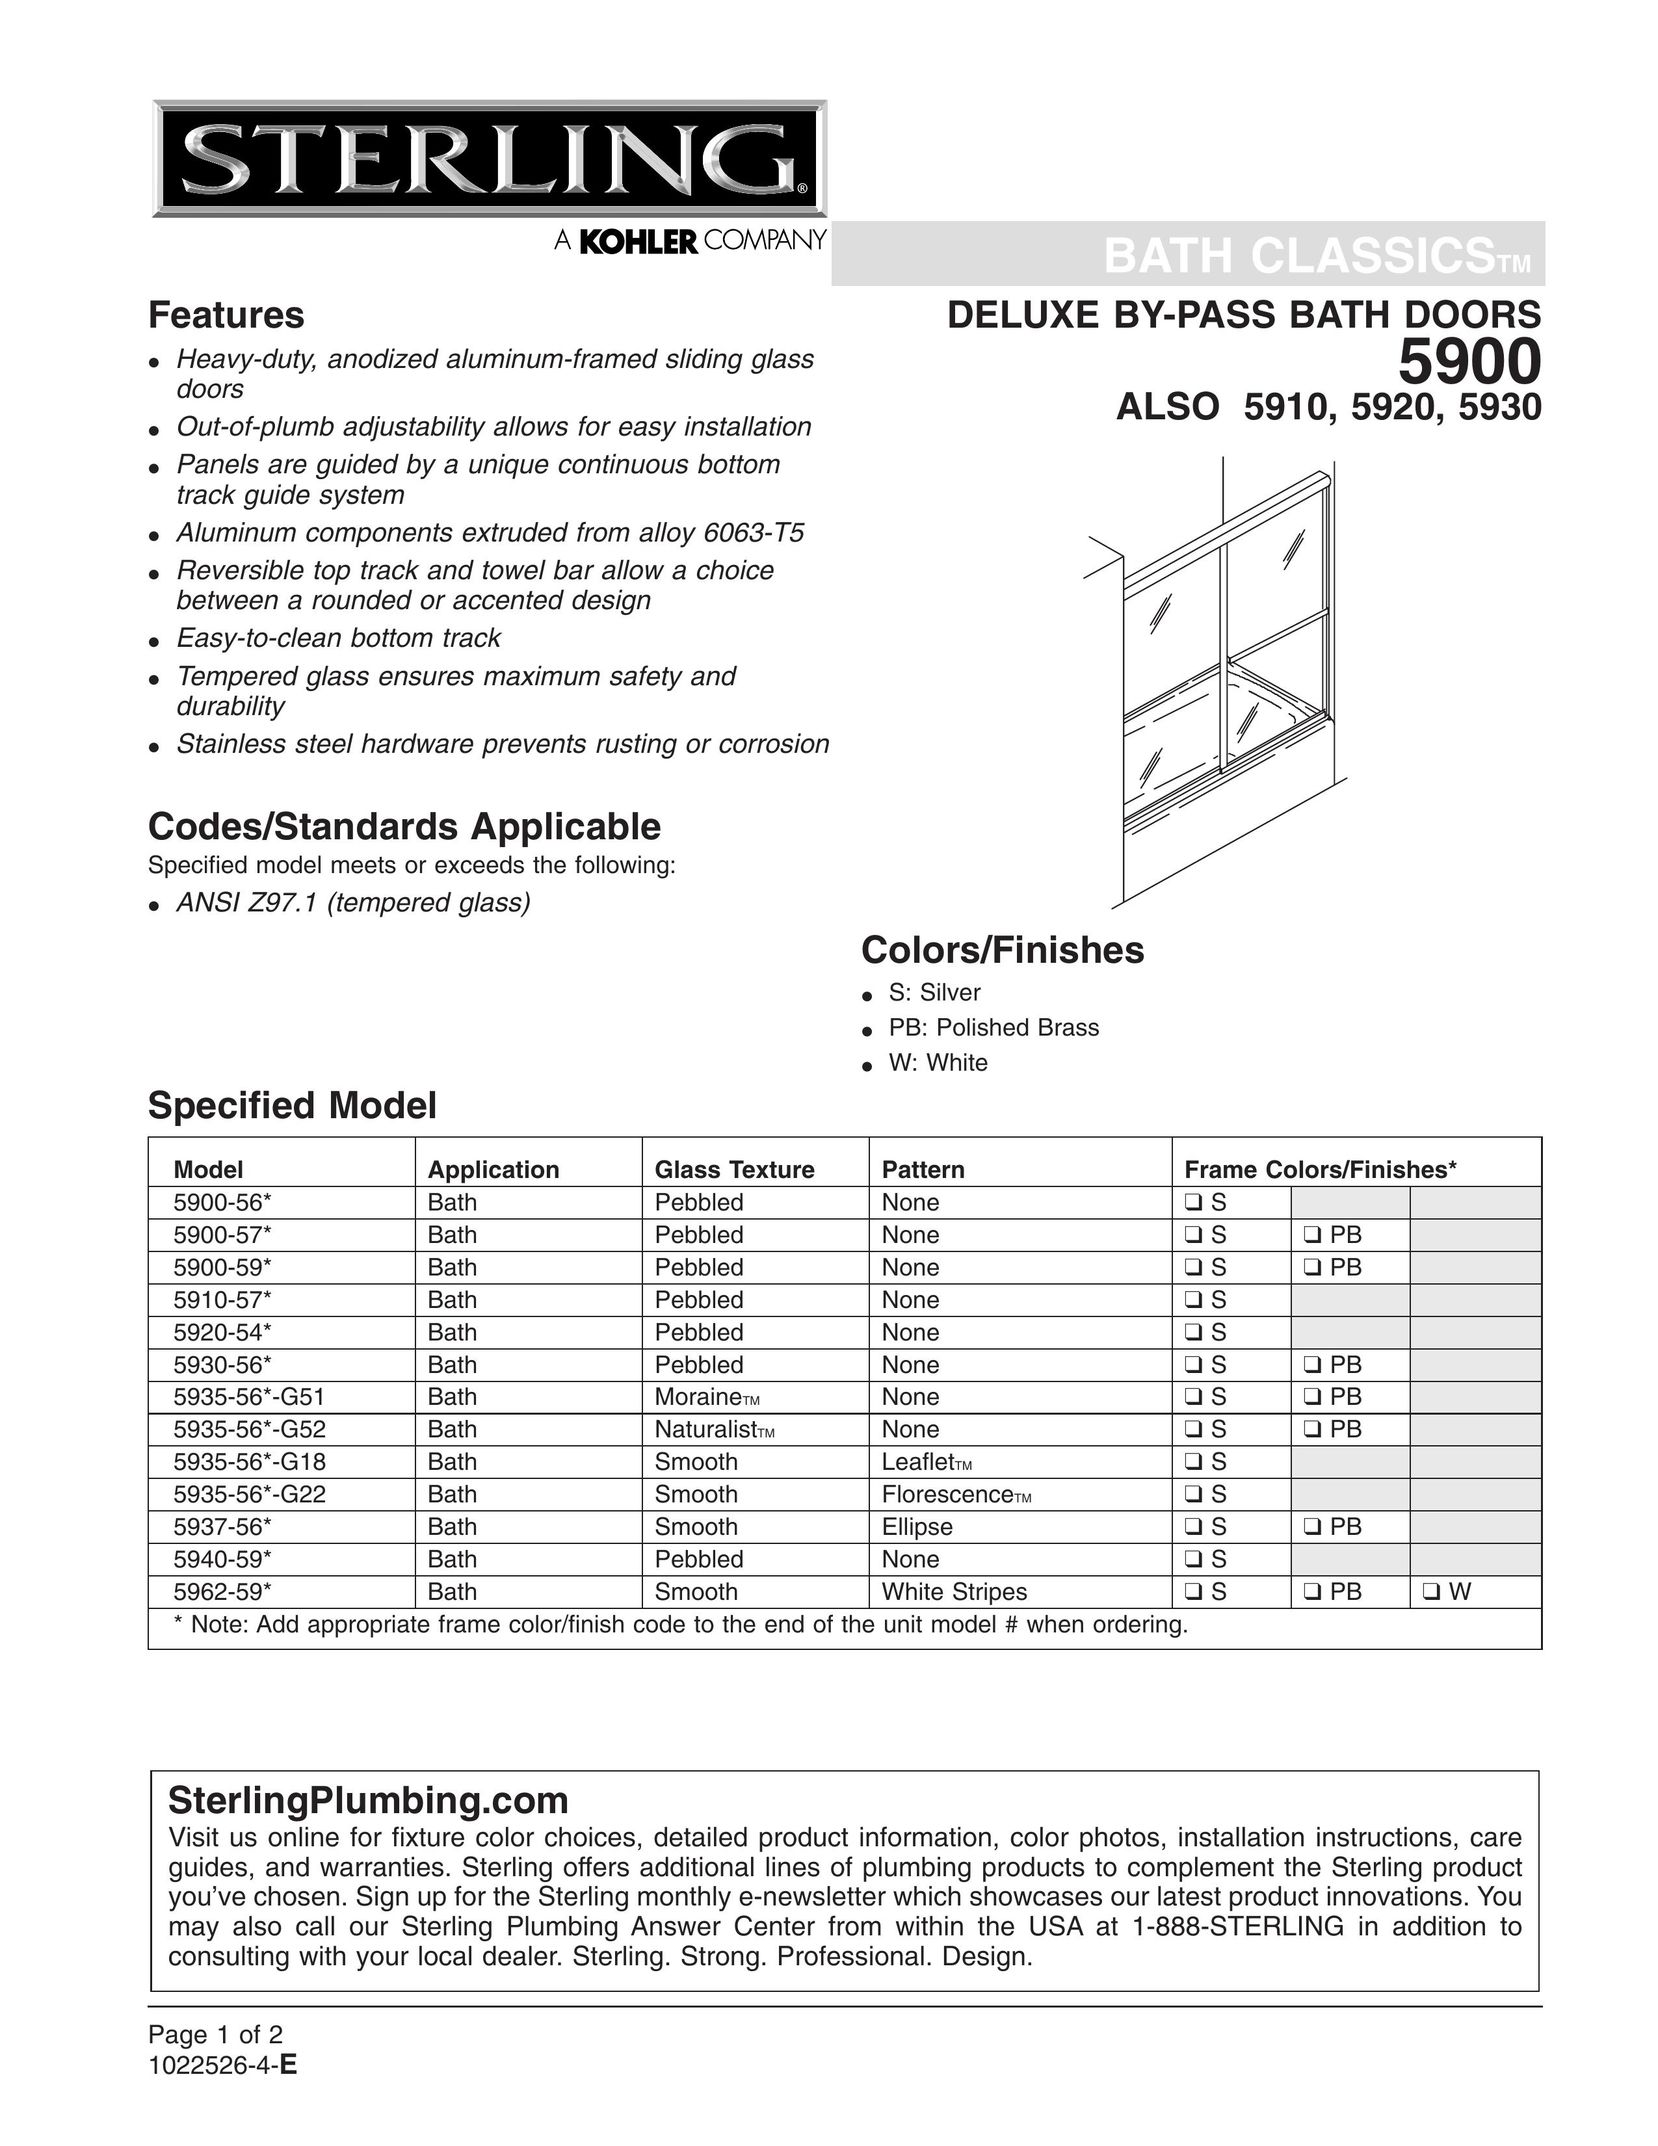 Sterling Plumbing 5935-56*-G51 Door User Manual